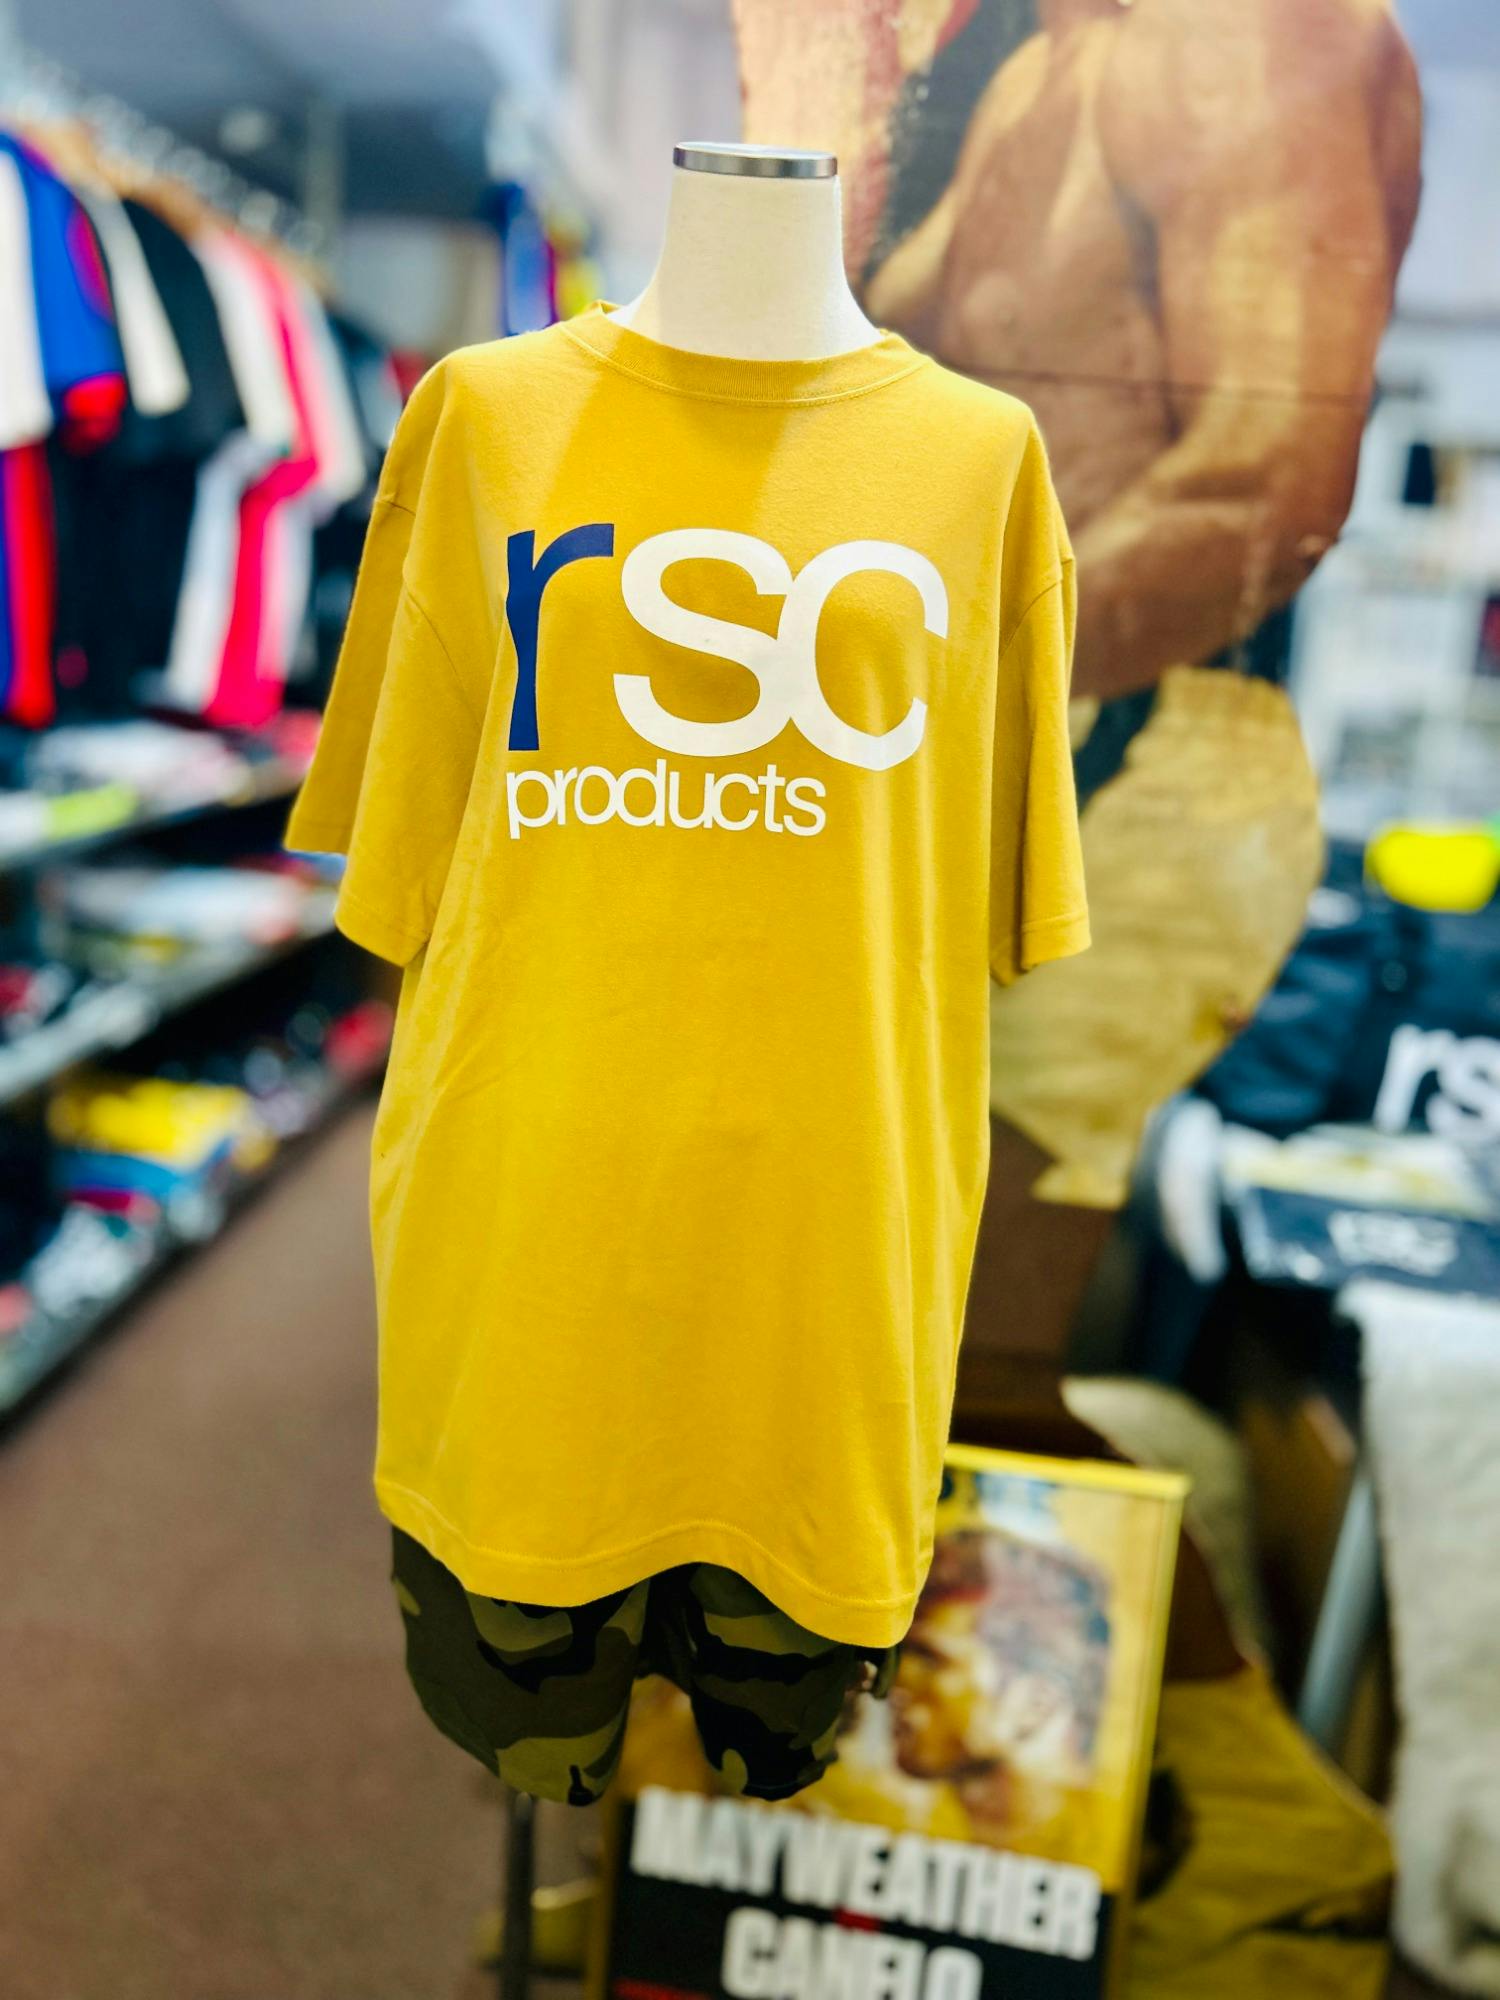 rsc定番ロゴ コットンTシャツに新色が仲間入りです🌷 画像2-1｜rsc products公式ウェブサイト